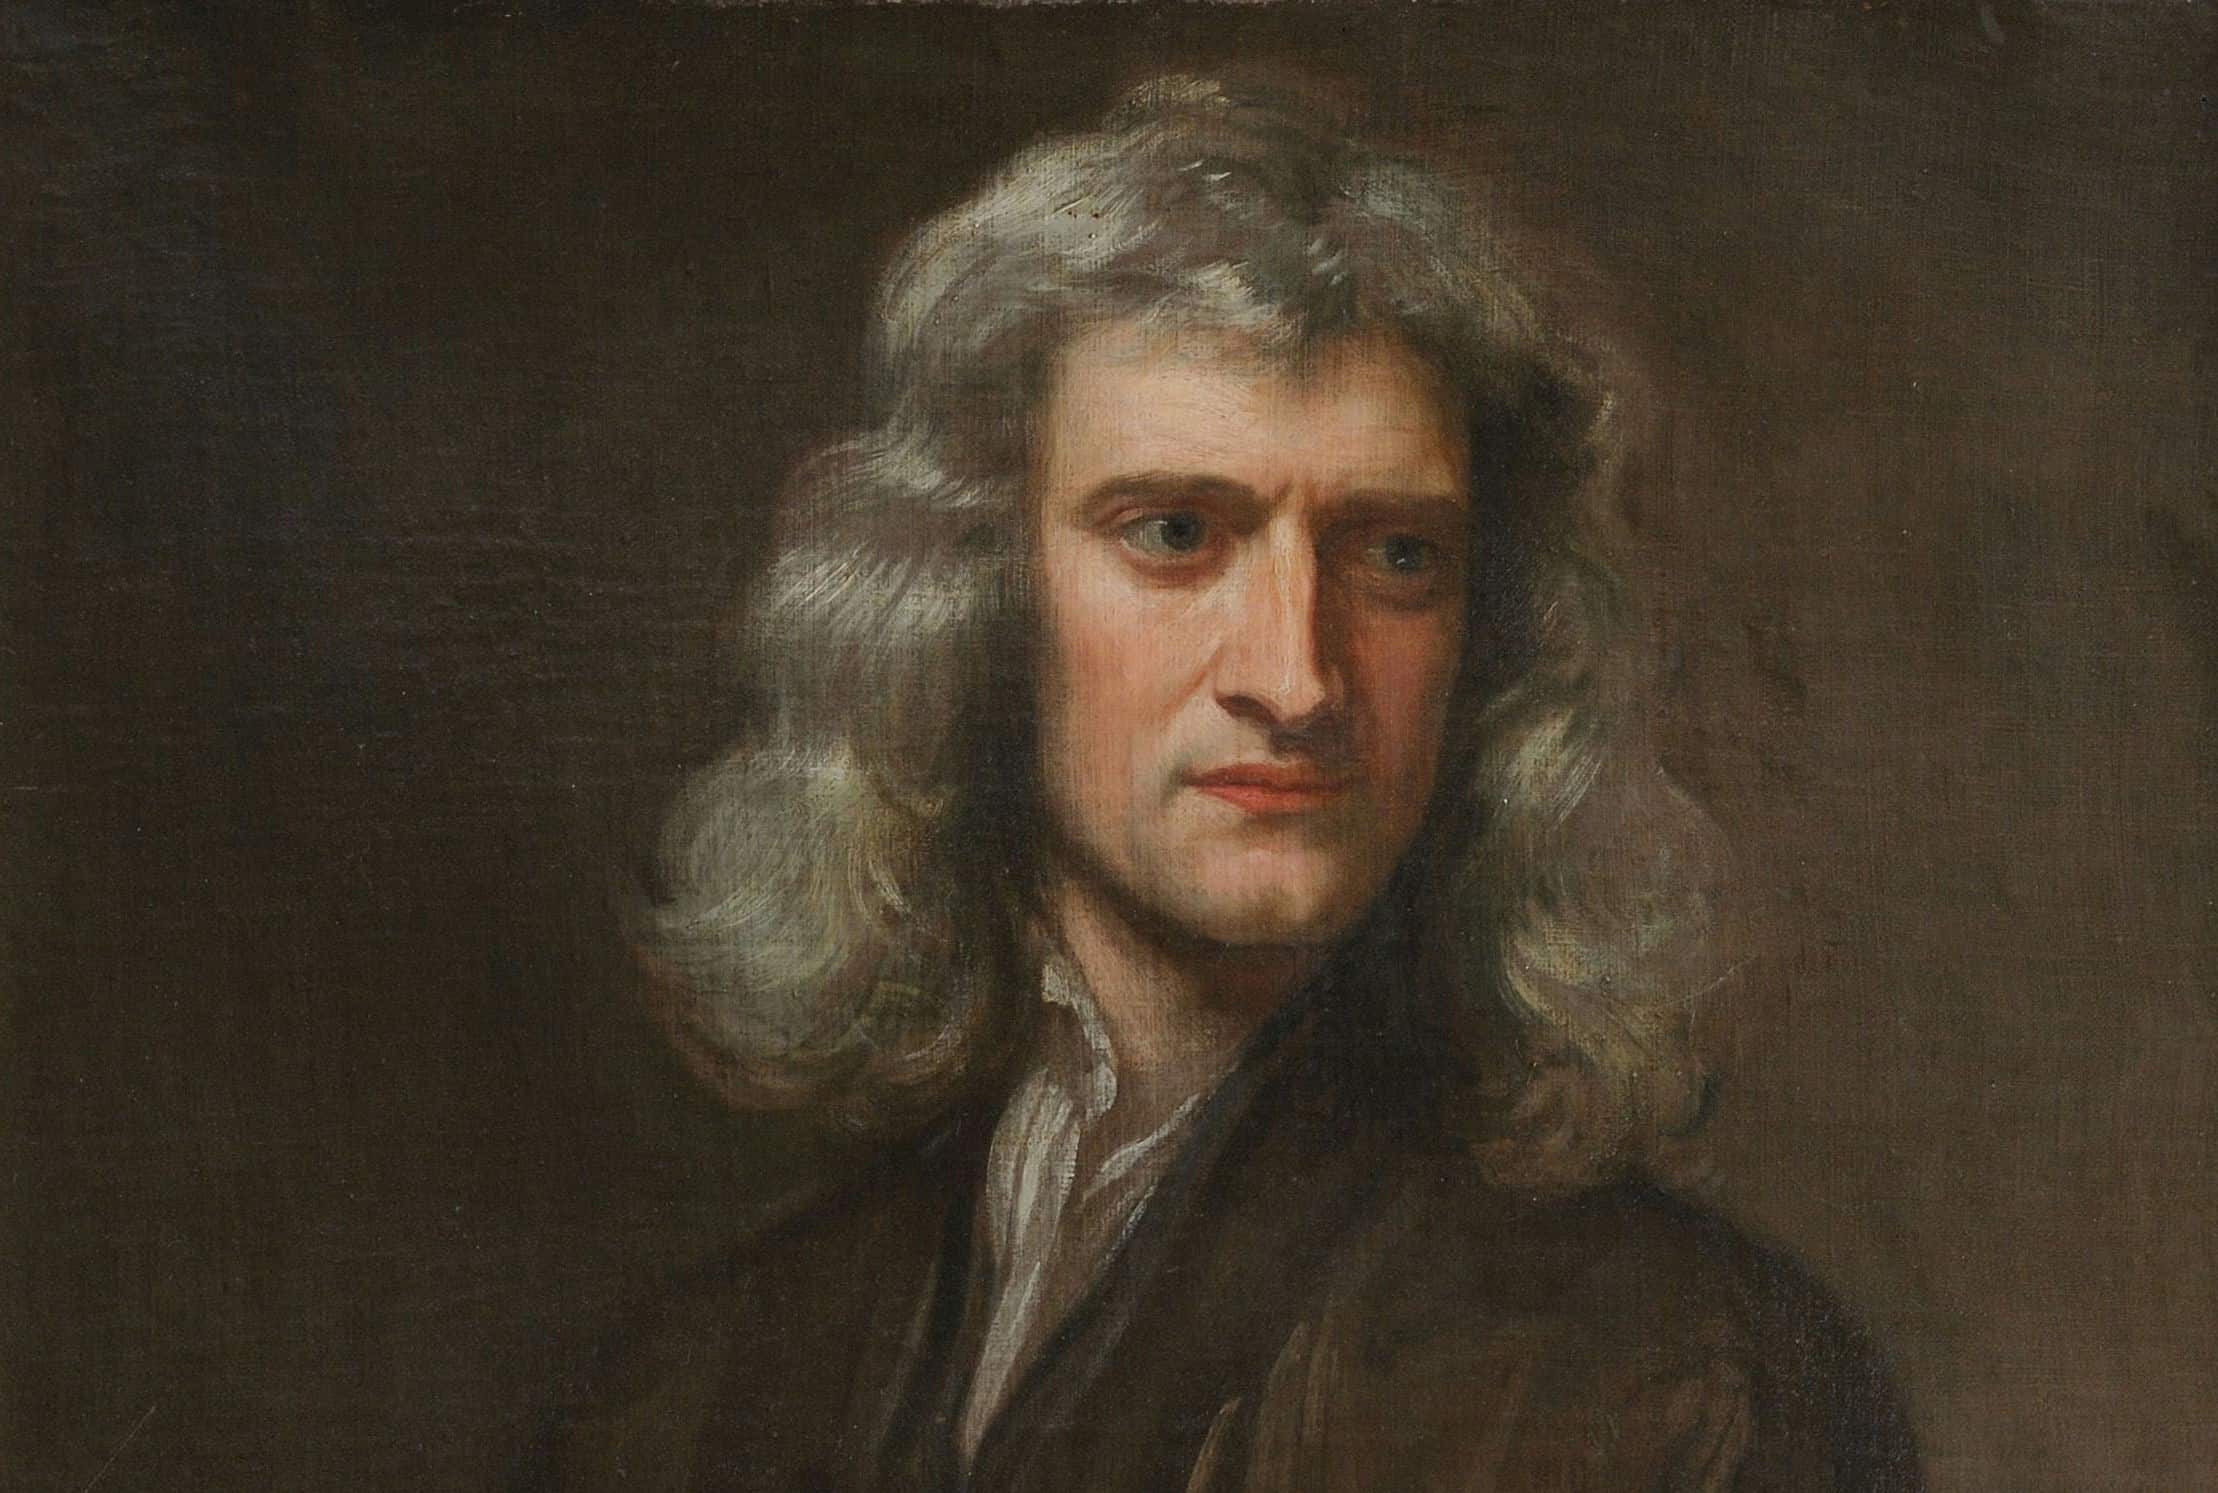 Isaac Newton's IQ